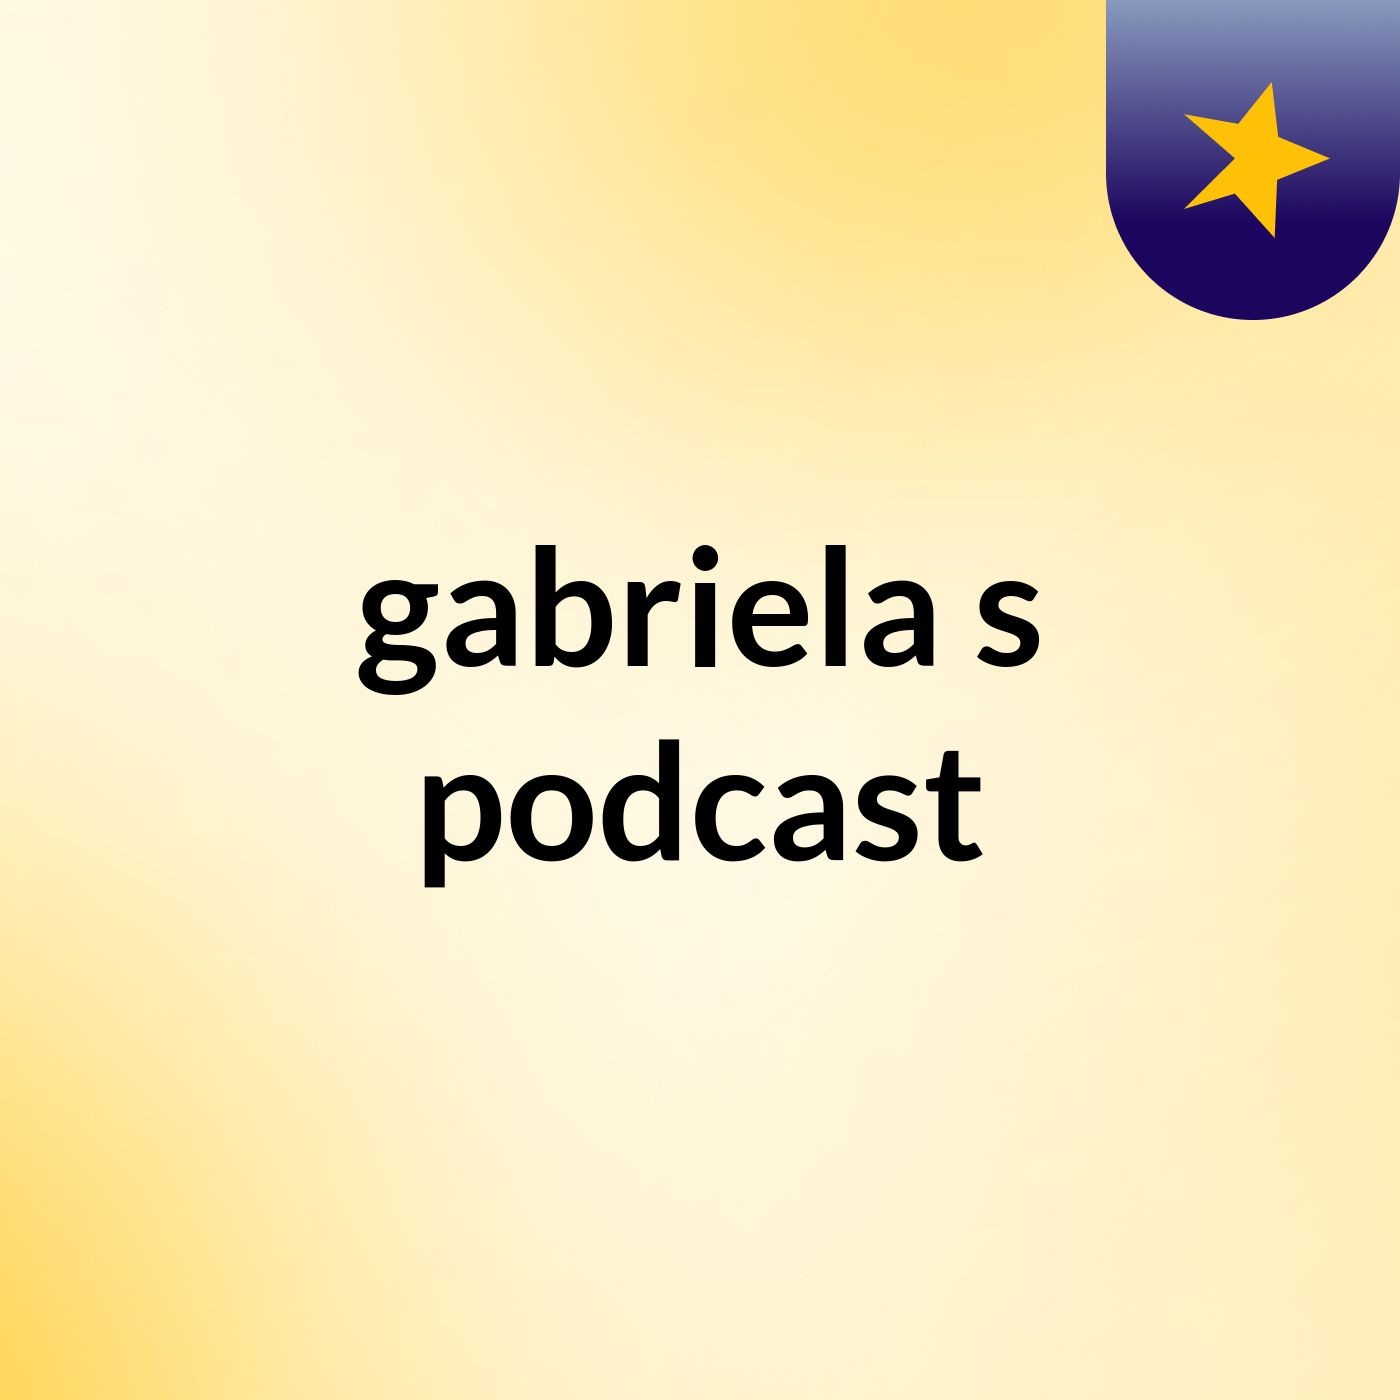 gabriela's podcast